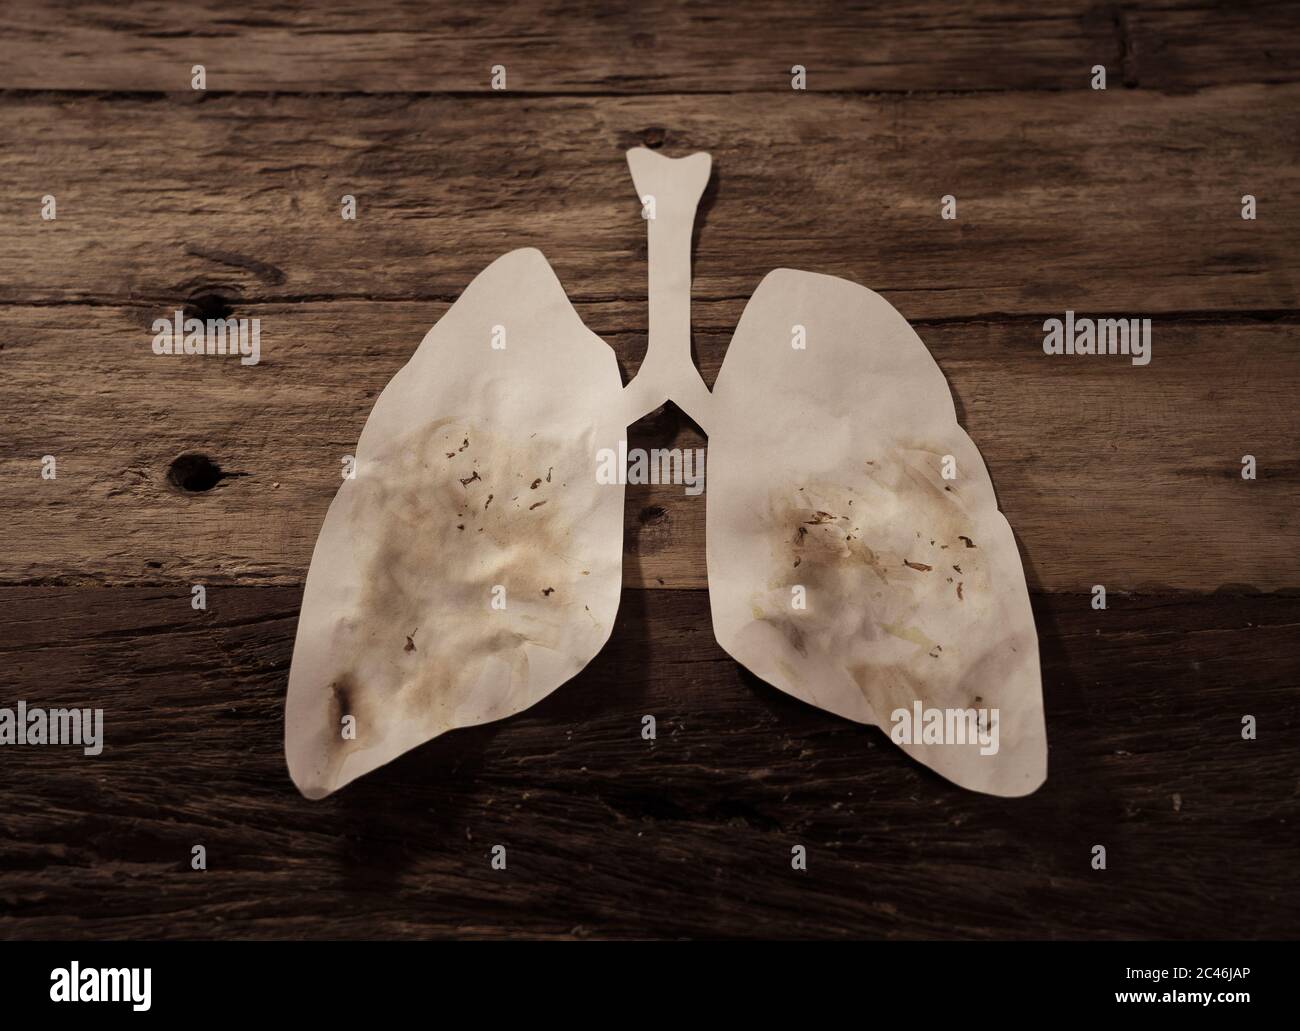 Konzeptuelles Bild von schmutzigen Papierlungs isoliert auf rustikalem Hintergrund. Werbeart Tabak und Lungenkrebs, medizinische Warnung, stoppen Sie das Rauchen und s Stockfoto